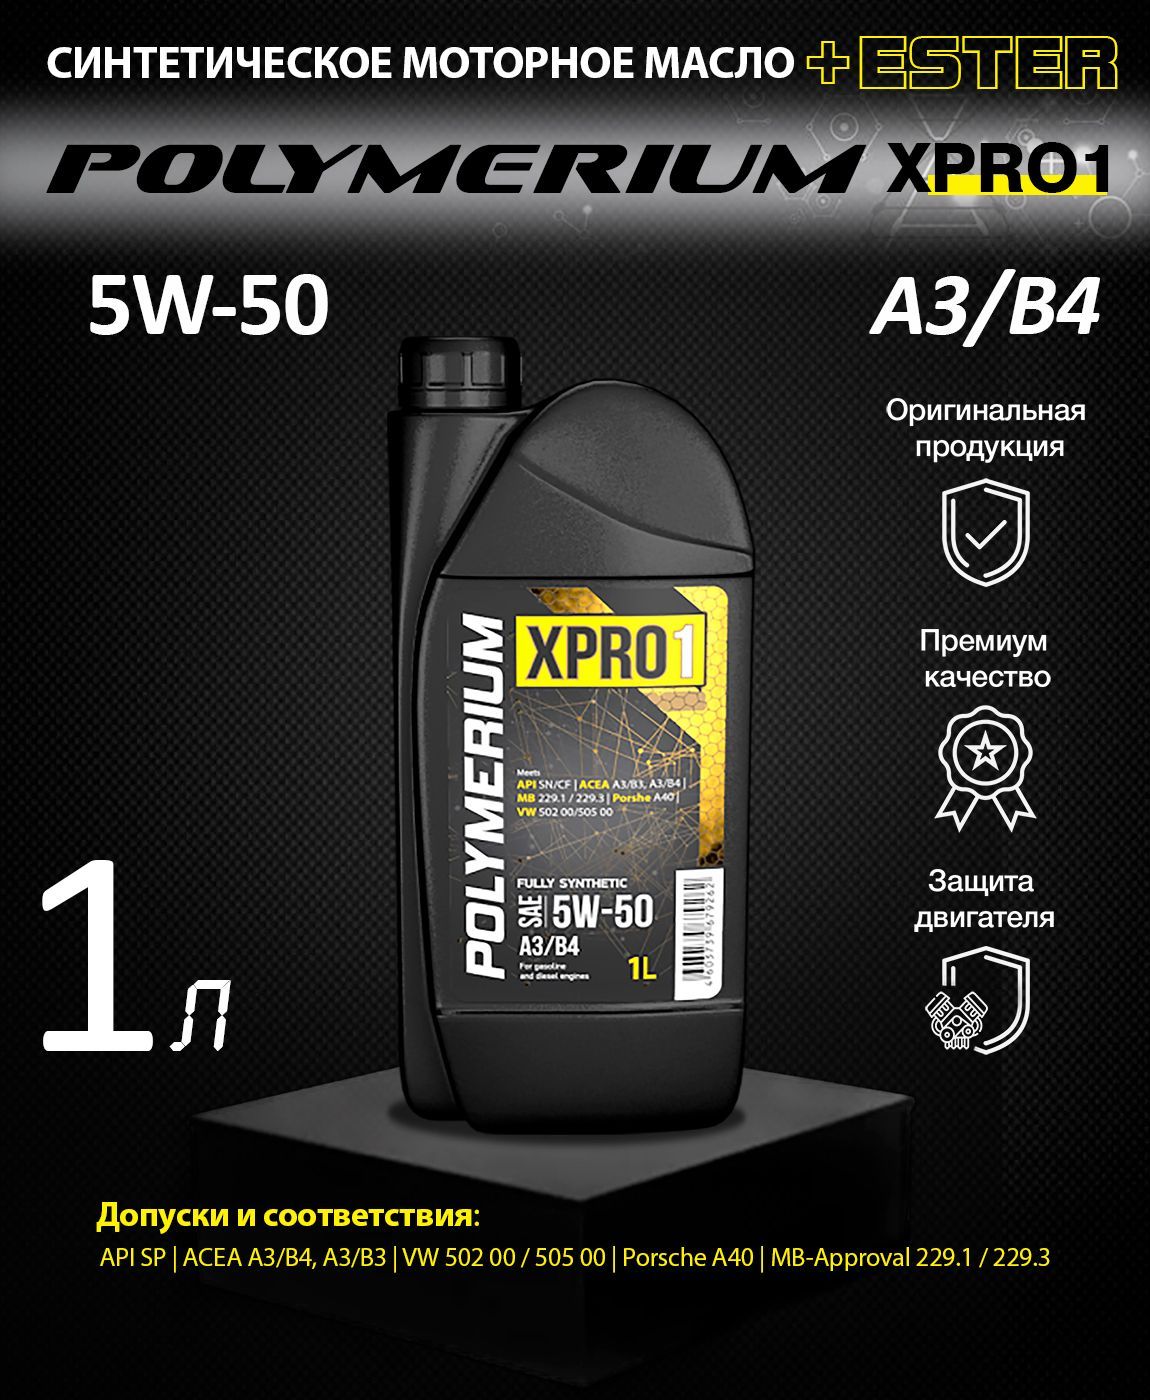 Polymerium xpro1 5w30. Polymerium xpro1 5w30 a5. Масло полимериум 5w30. Polymerium xpro1 5w30 a3/b4.